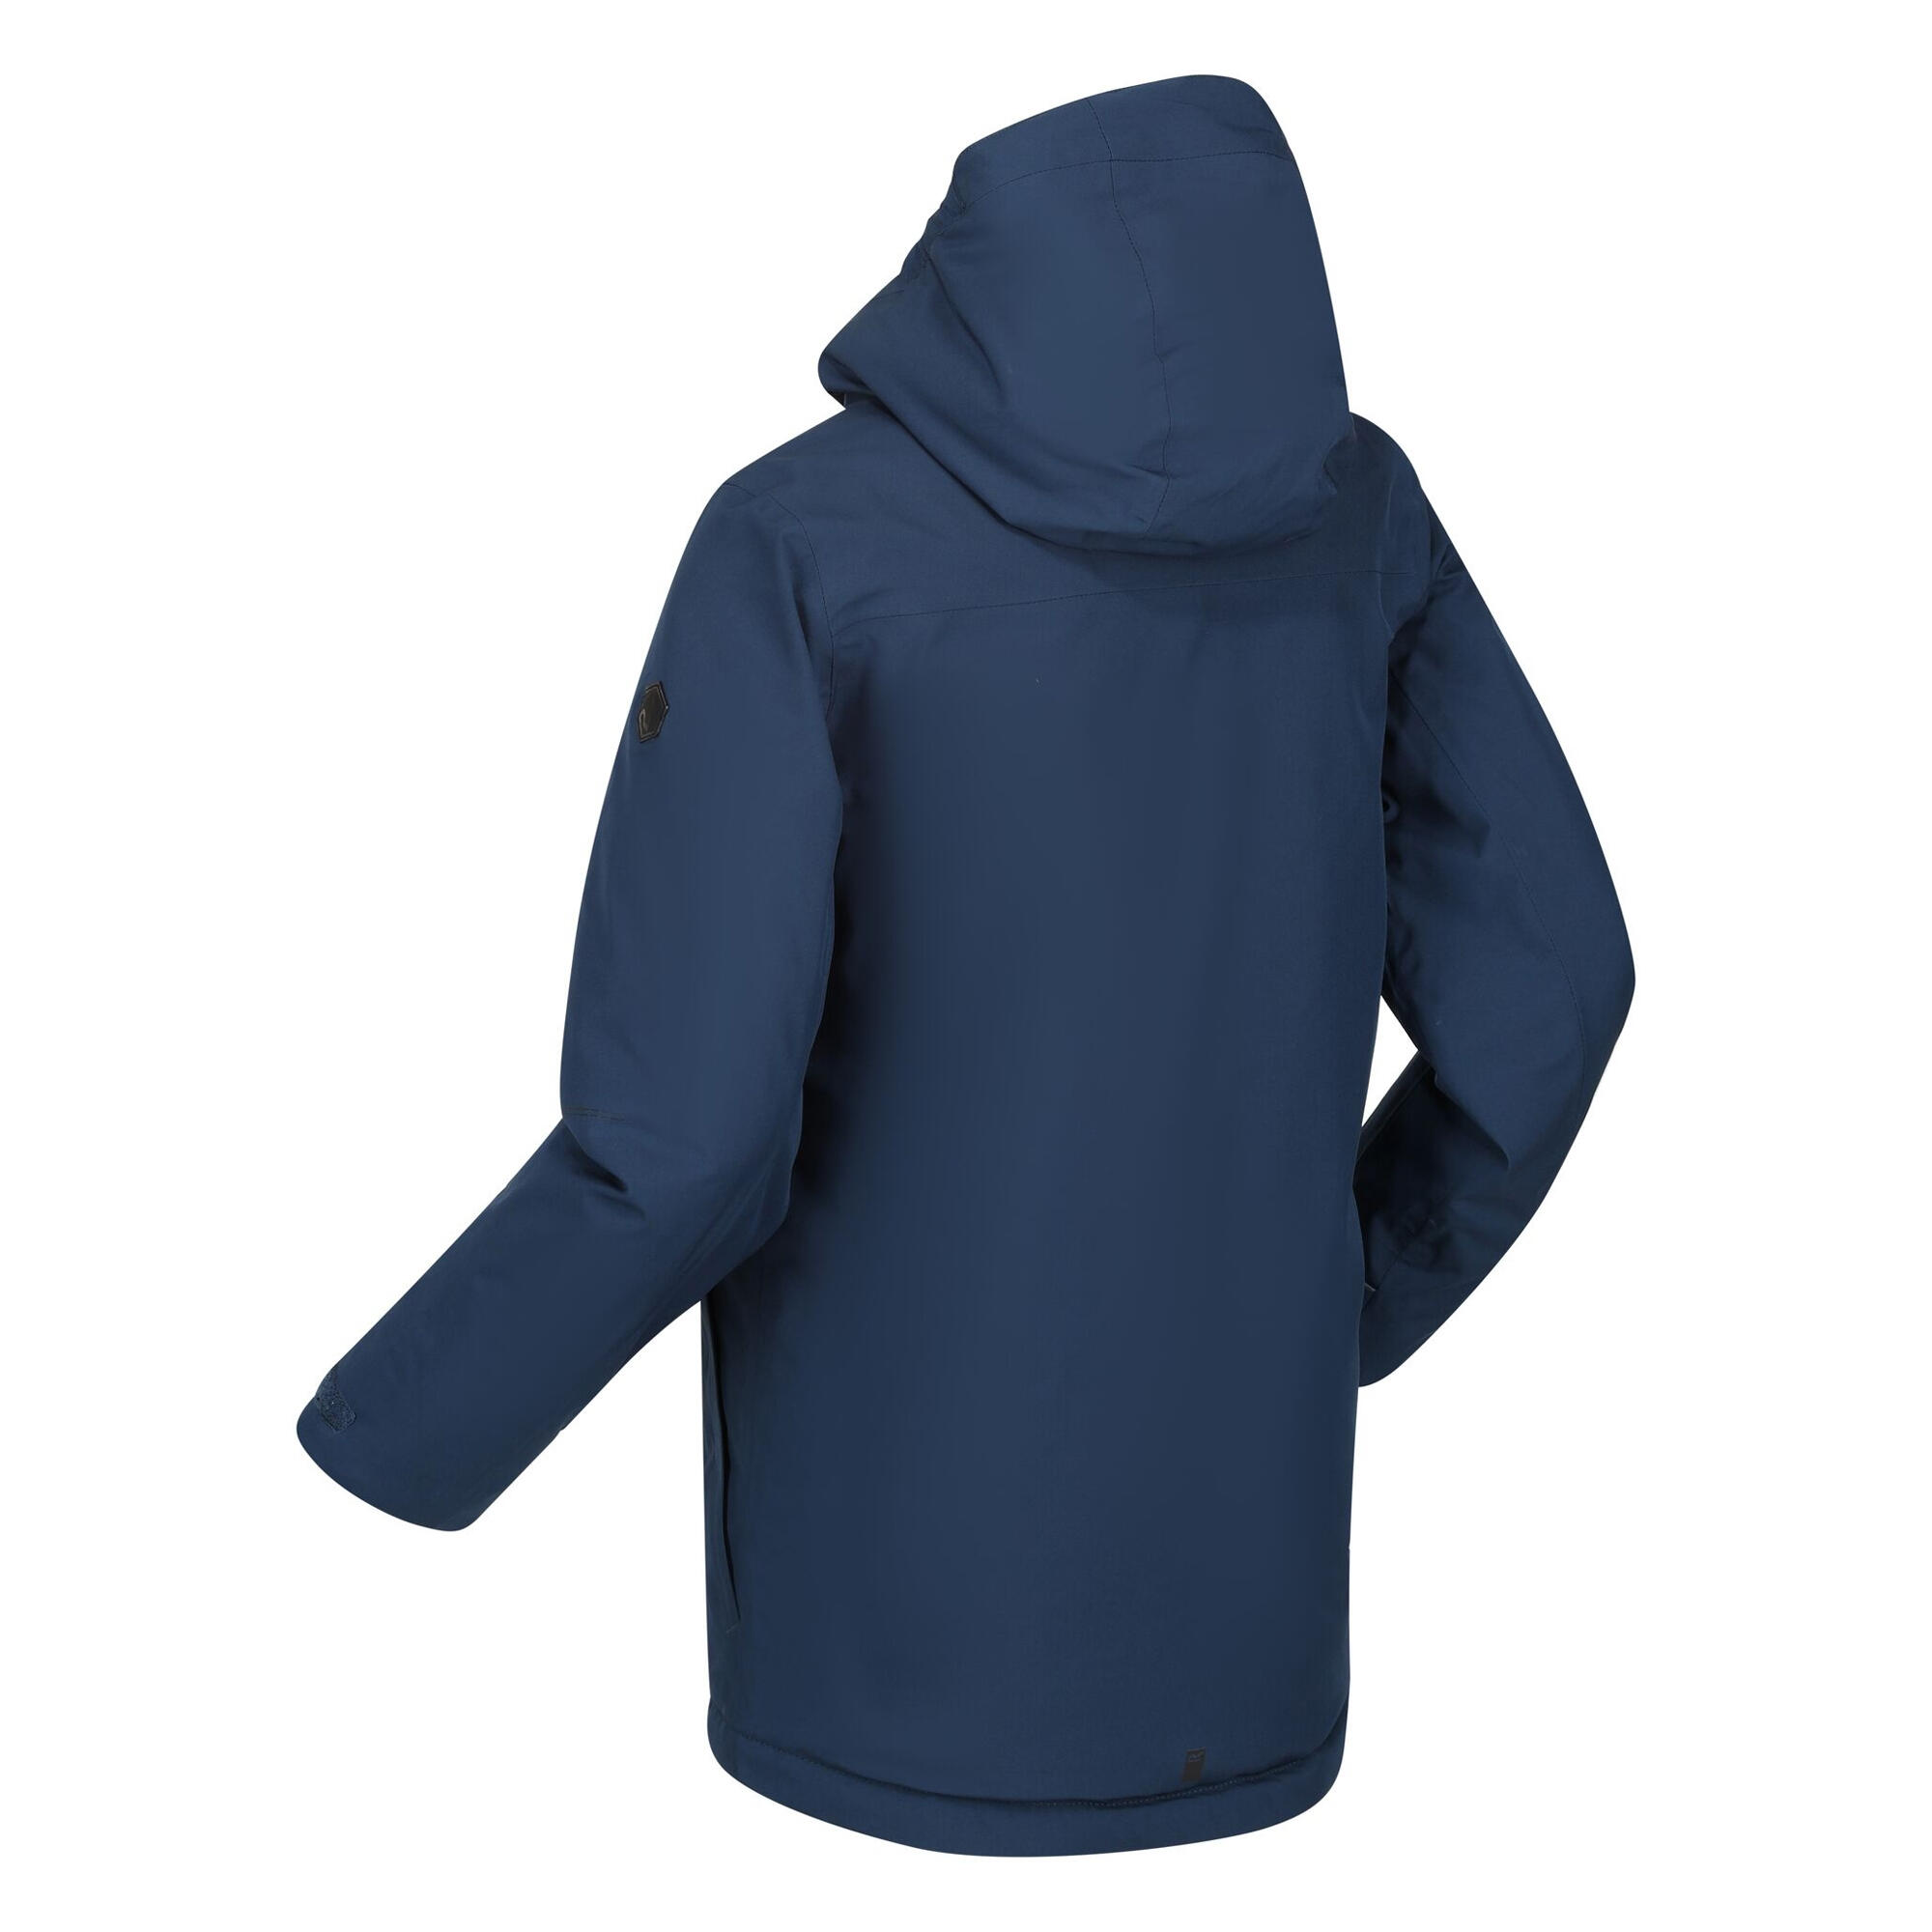 Childrens/Kids Yewbank Insulated Jacket (Moonlight Denim) 4/5